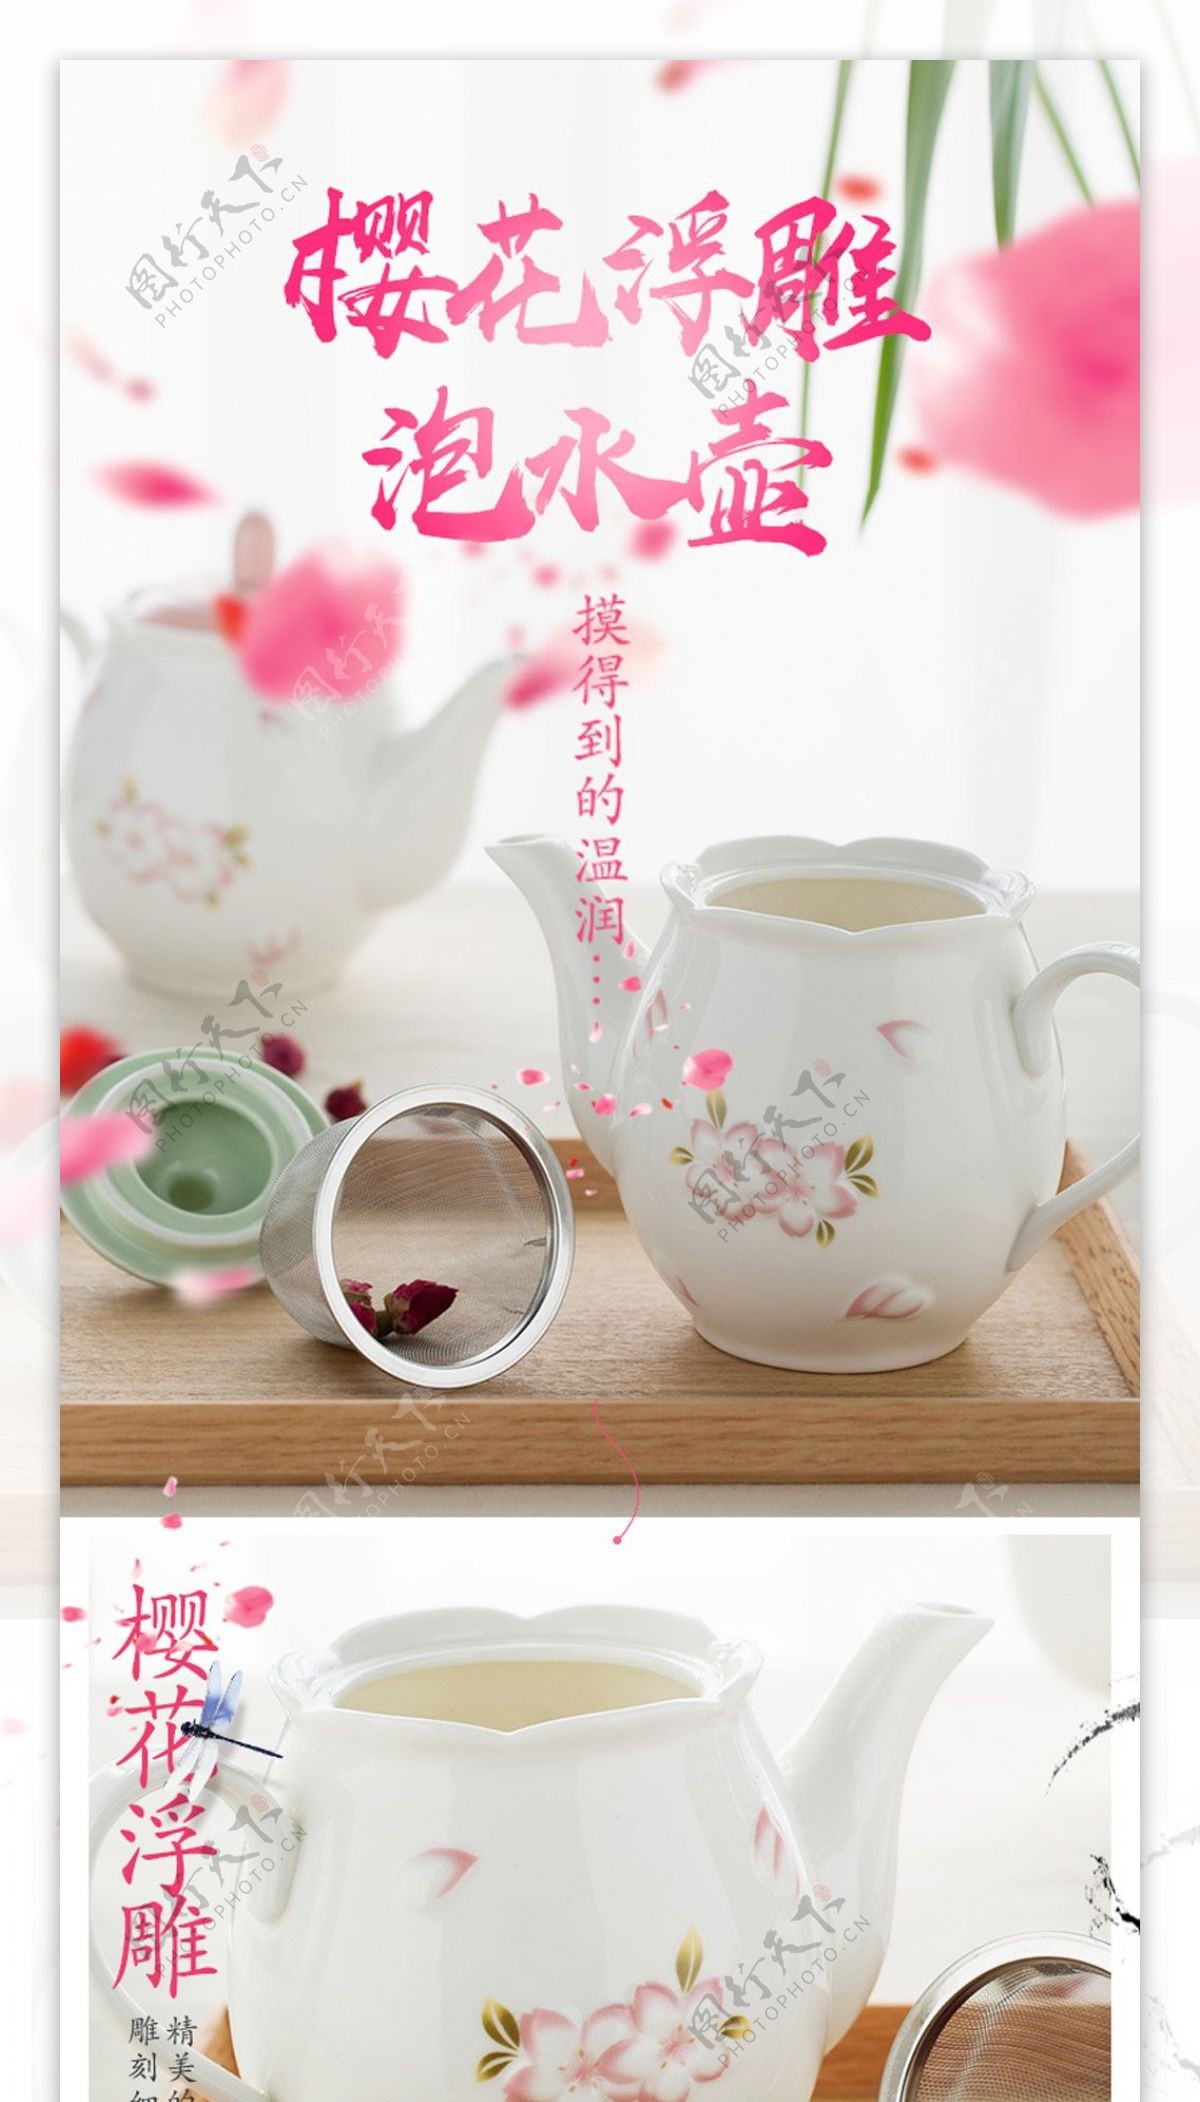 粉色茶壶家居用品温馨电商淘宝天猫详情页模板樱花